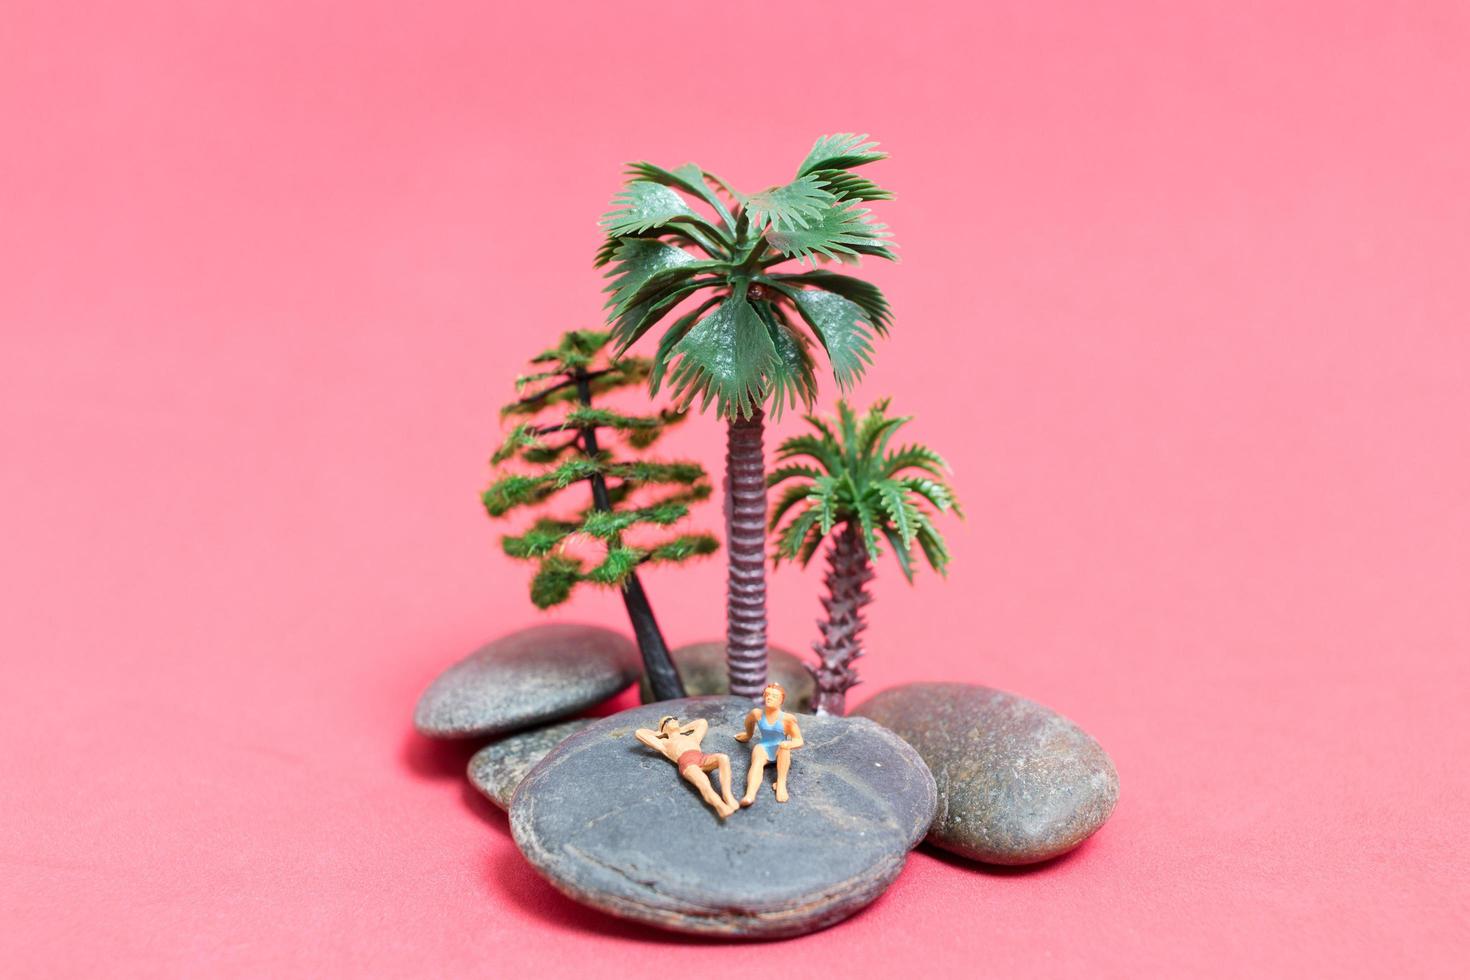 miniatuurmensen die zwemkleding dragen die op een rots met een roze achtergrond ontspannen foto